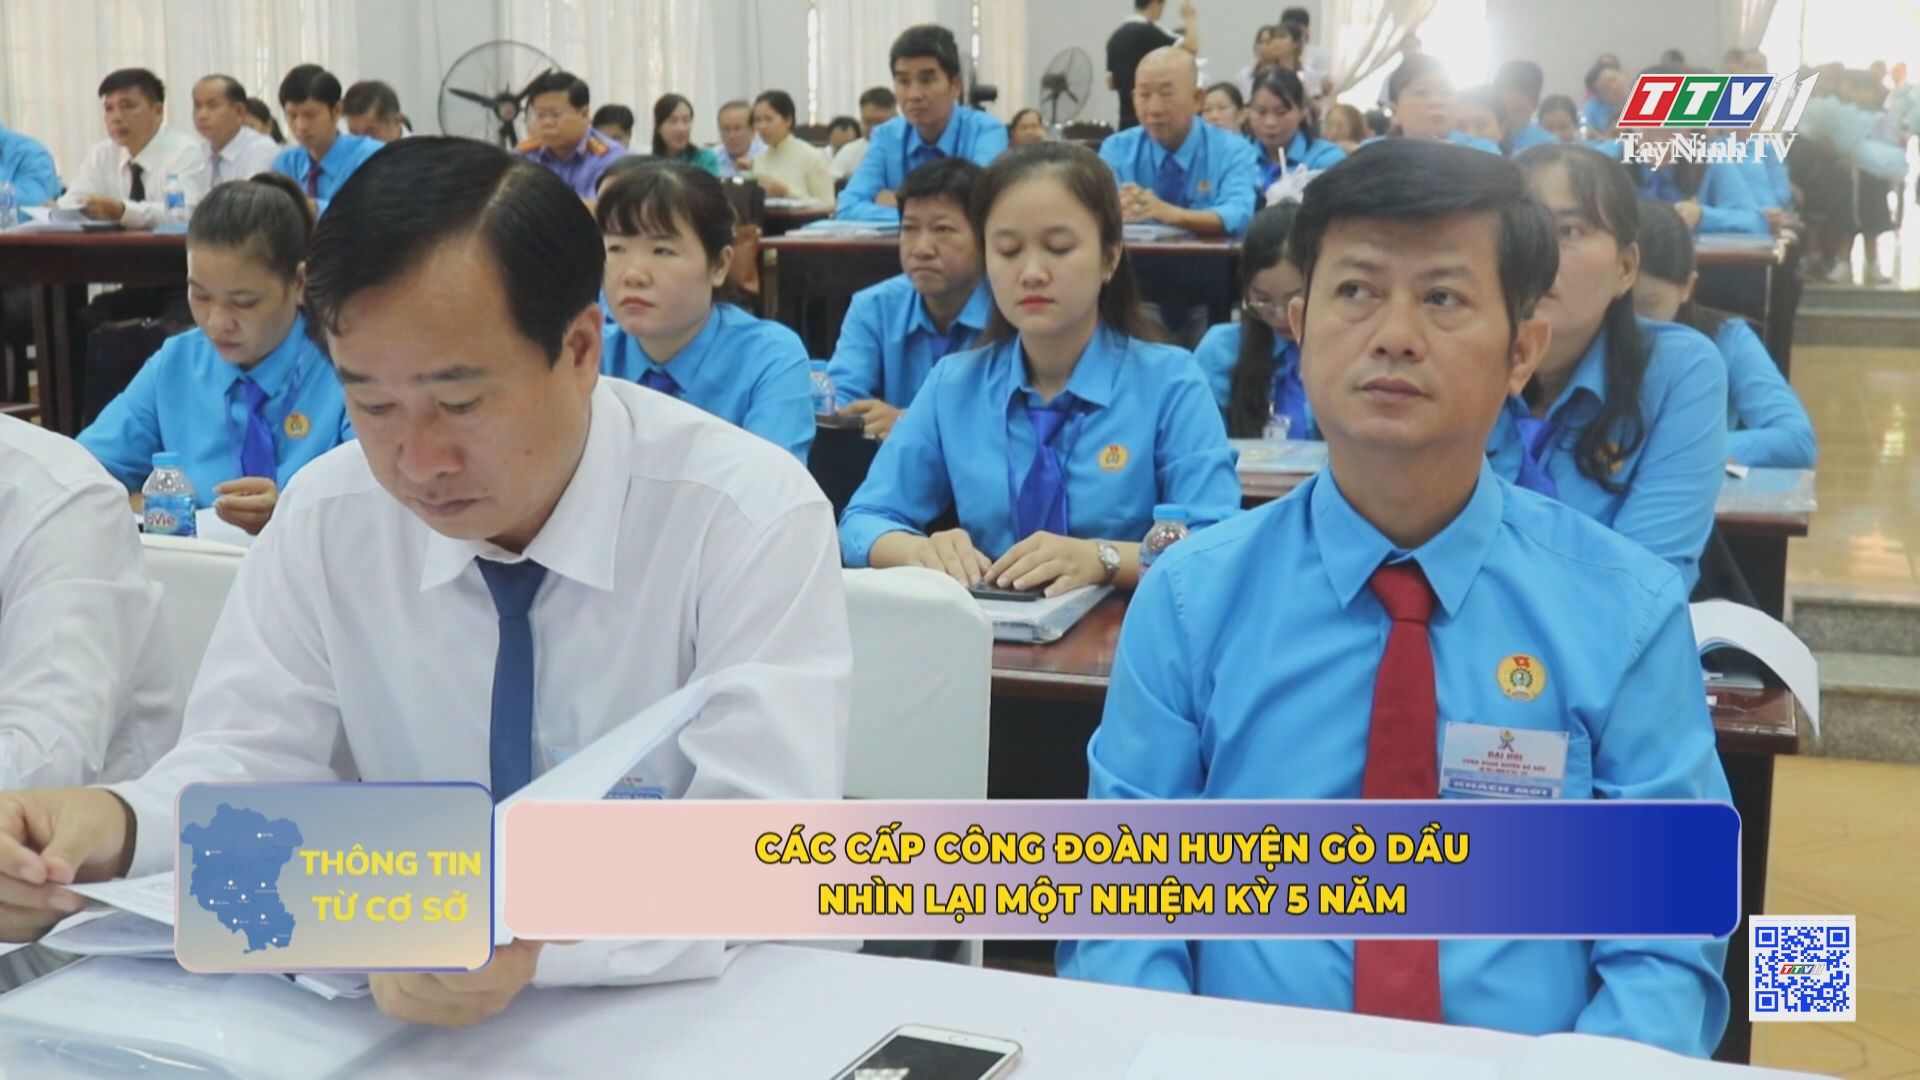 Các cấp  công đoàn huyện Gò Dầu nhìn lại một nhiệm kì 5 năm | TayNinhTV